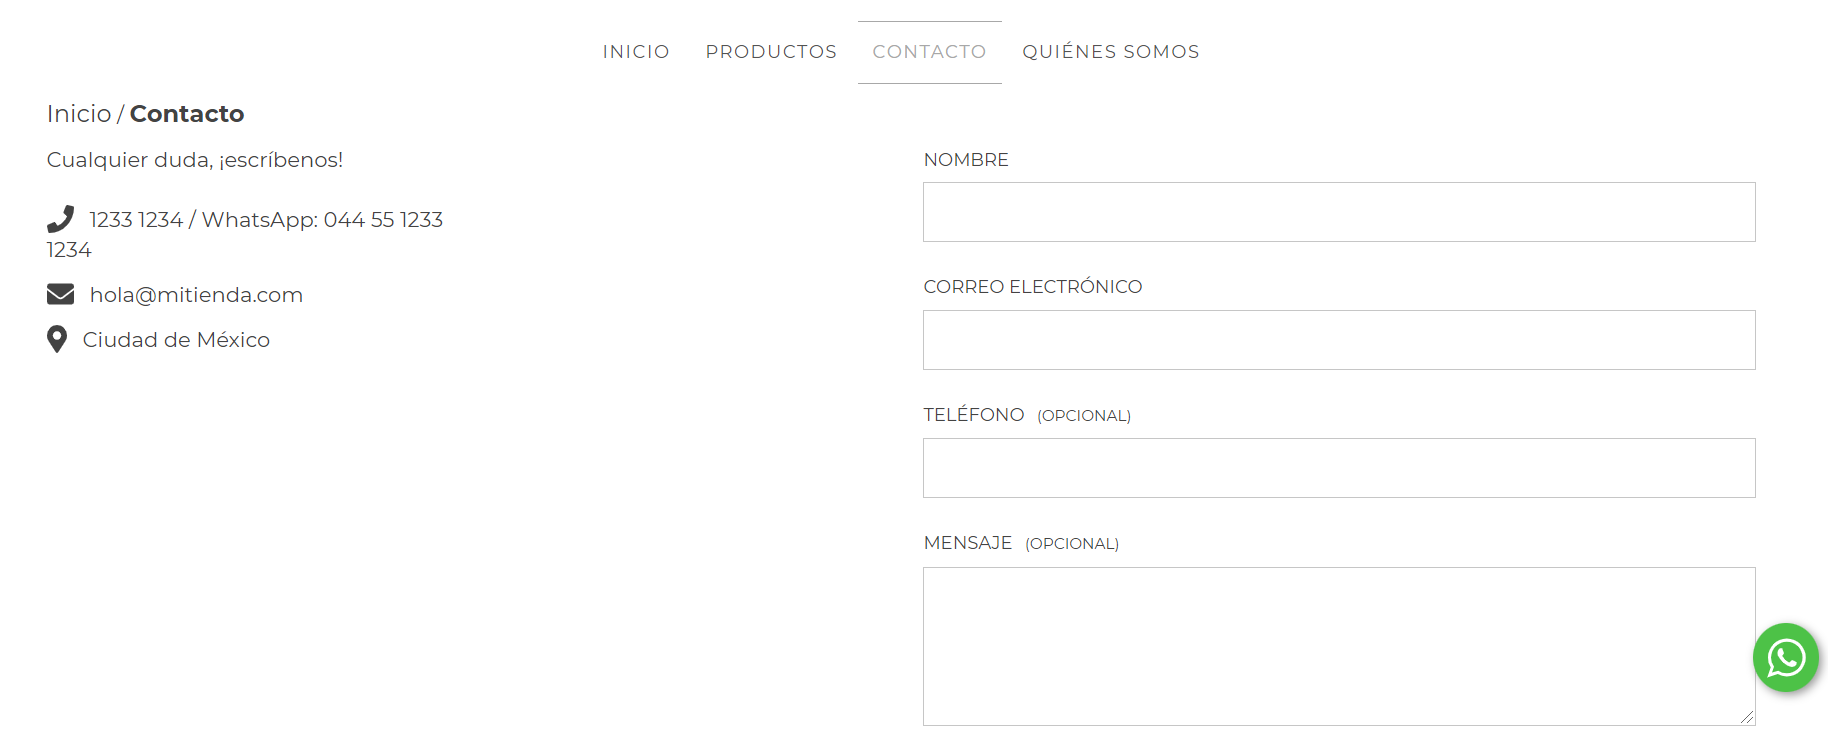 Página de contacto en la tienda, mostrando los datos de contacto que se configuraron en los pasos